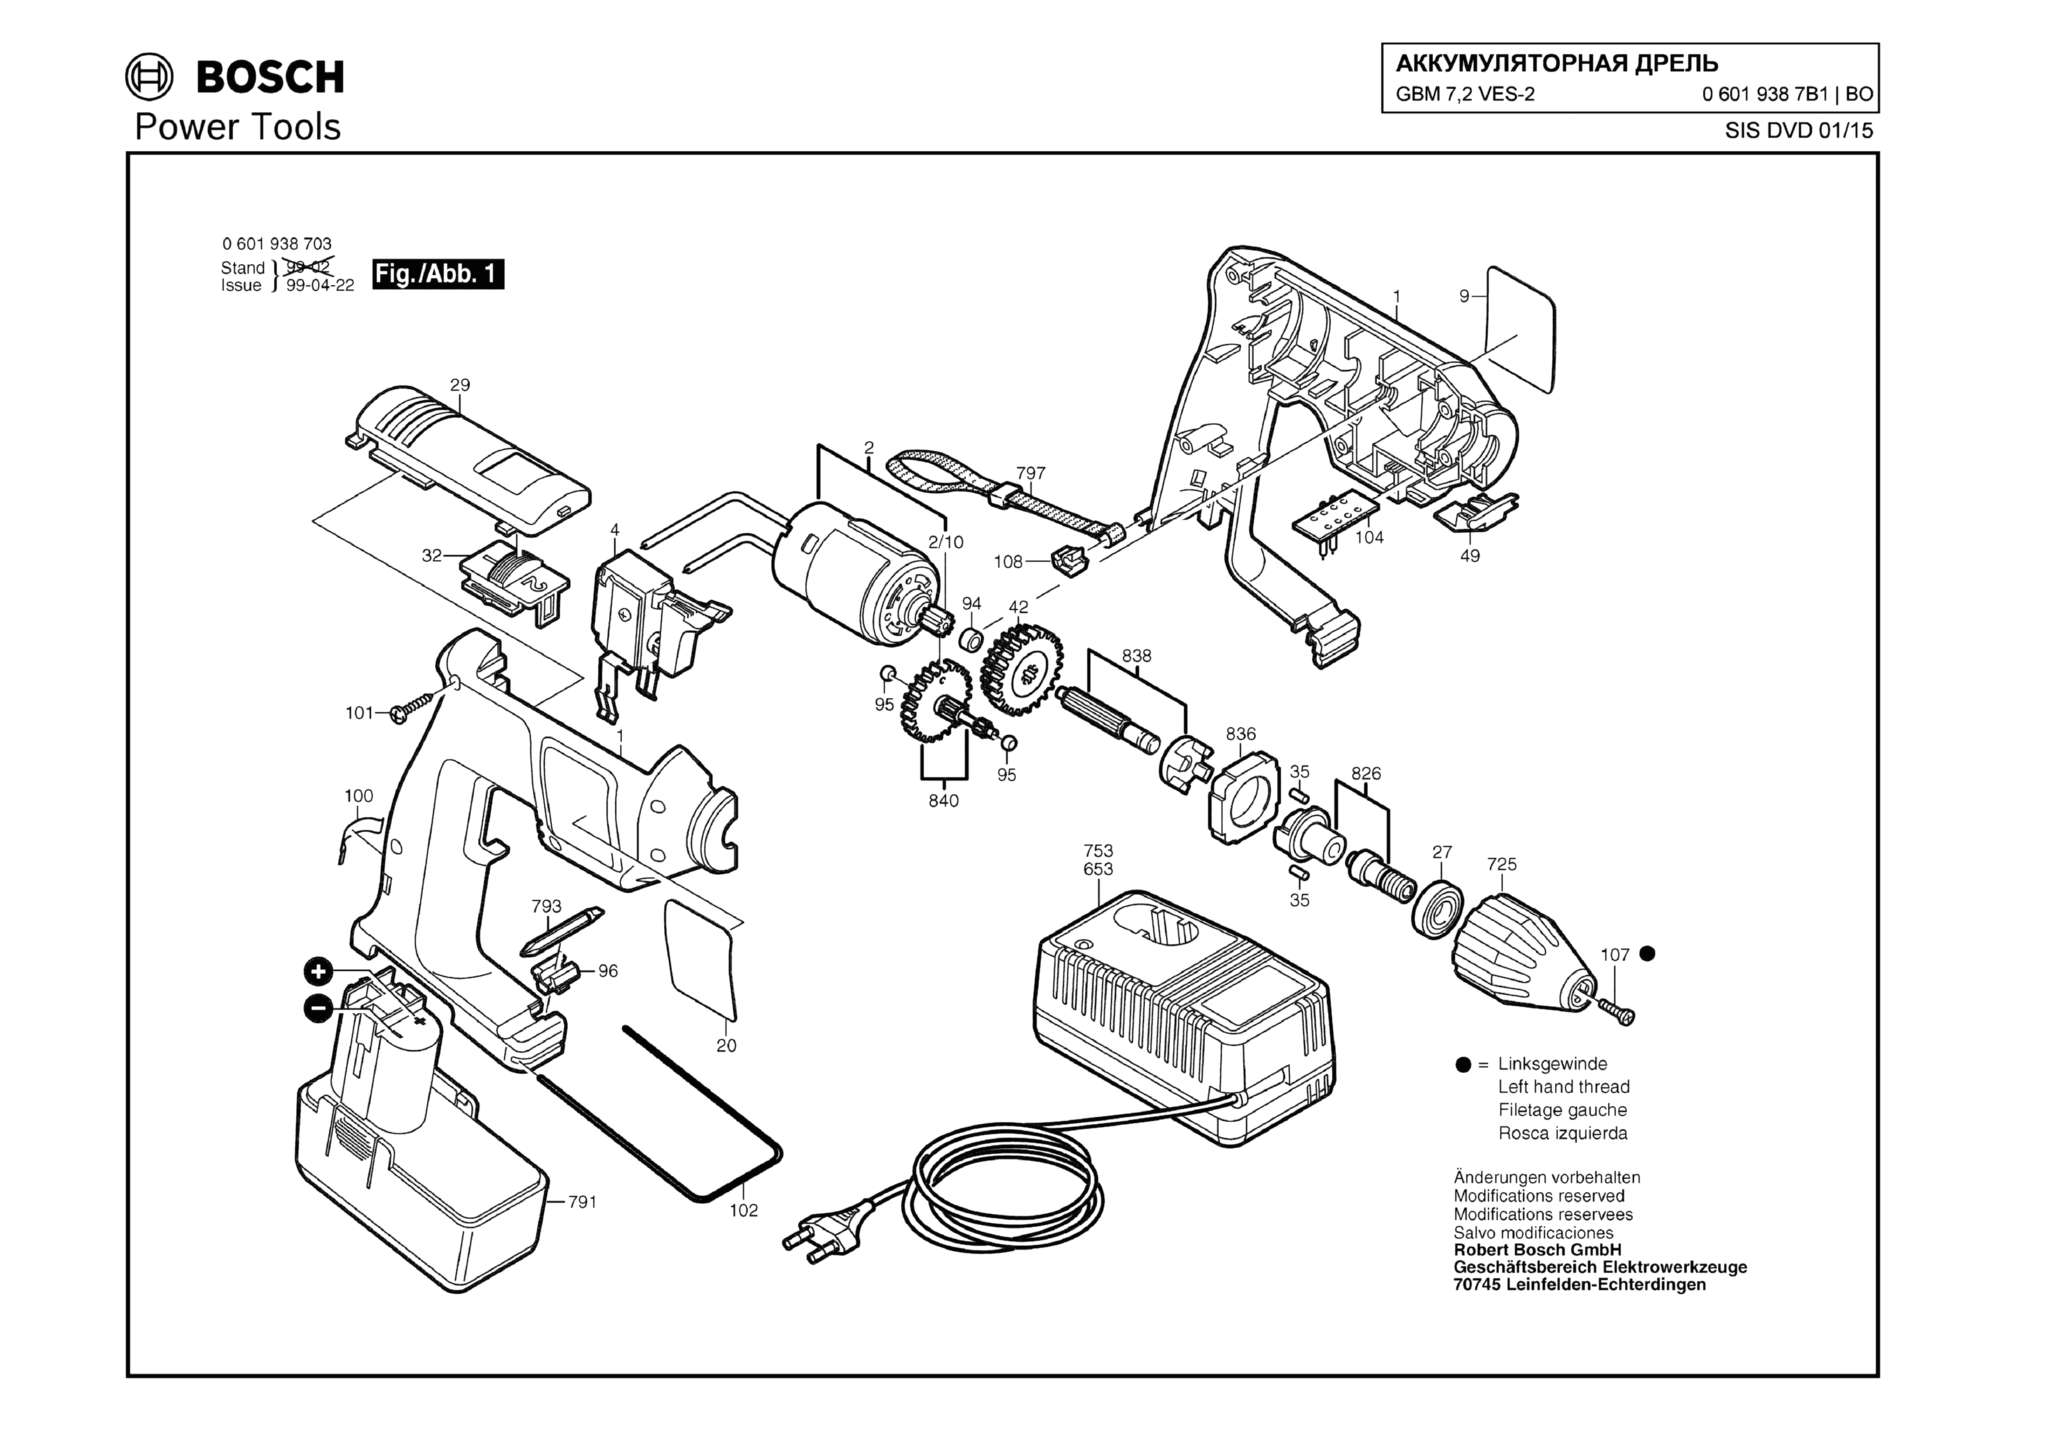 Запчасти, схема и деталировка Bosch GBM 7,2 VES-2 (ТИП 06019387B1)